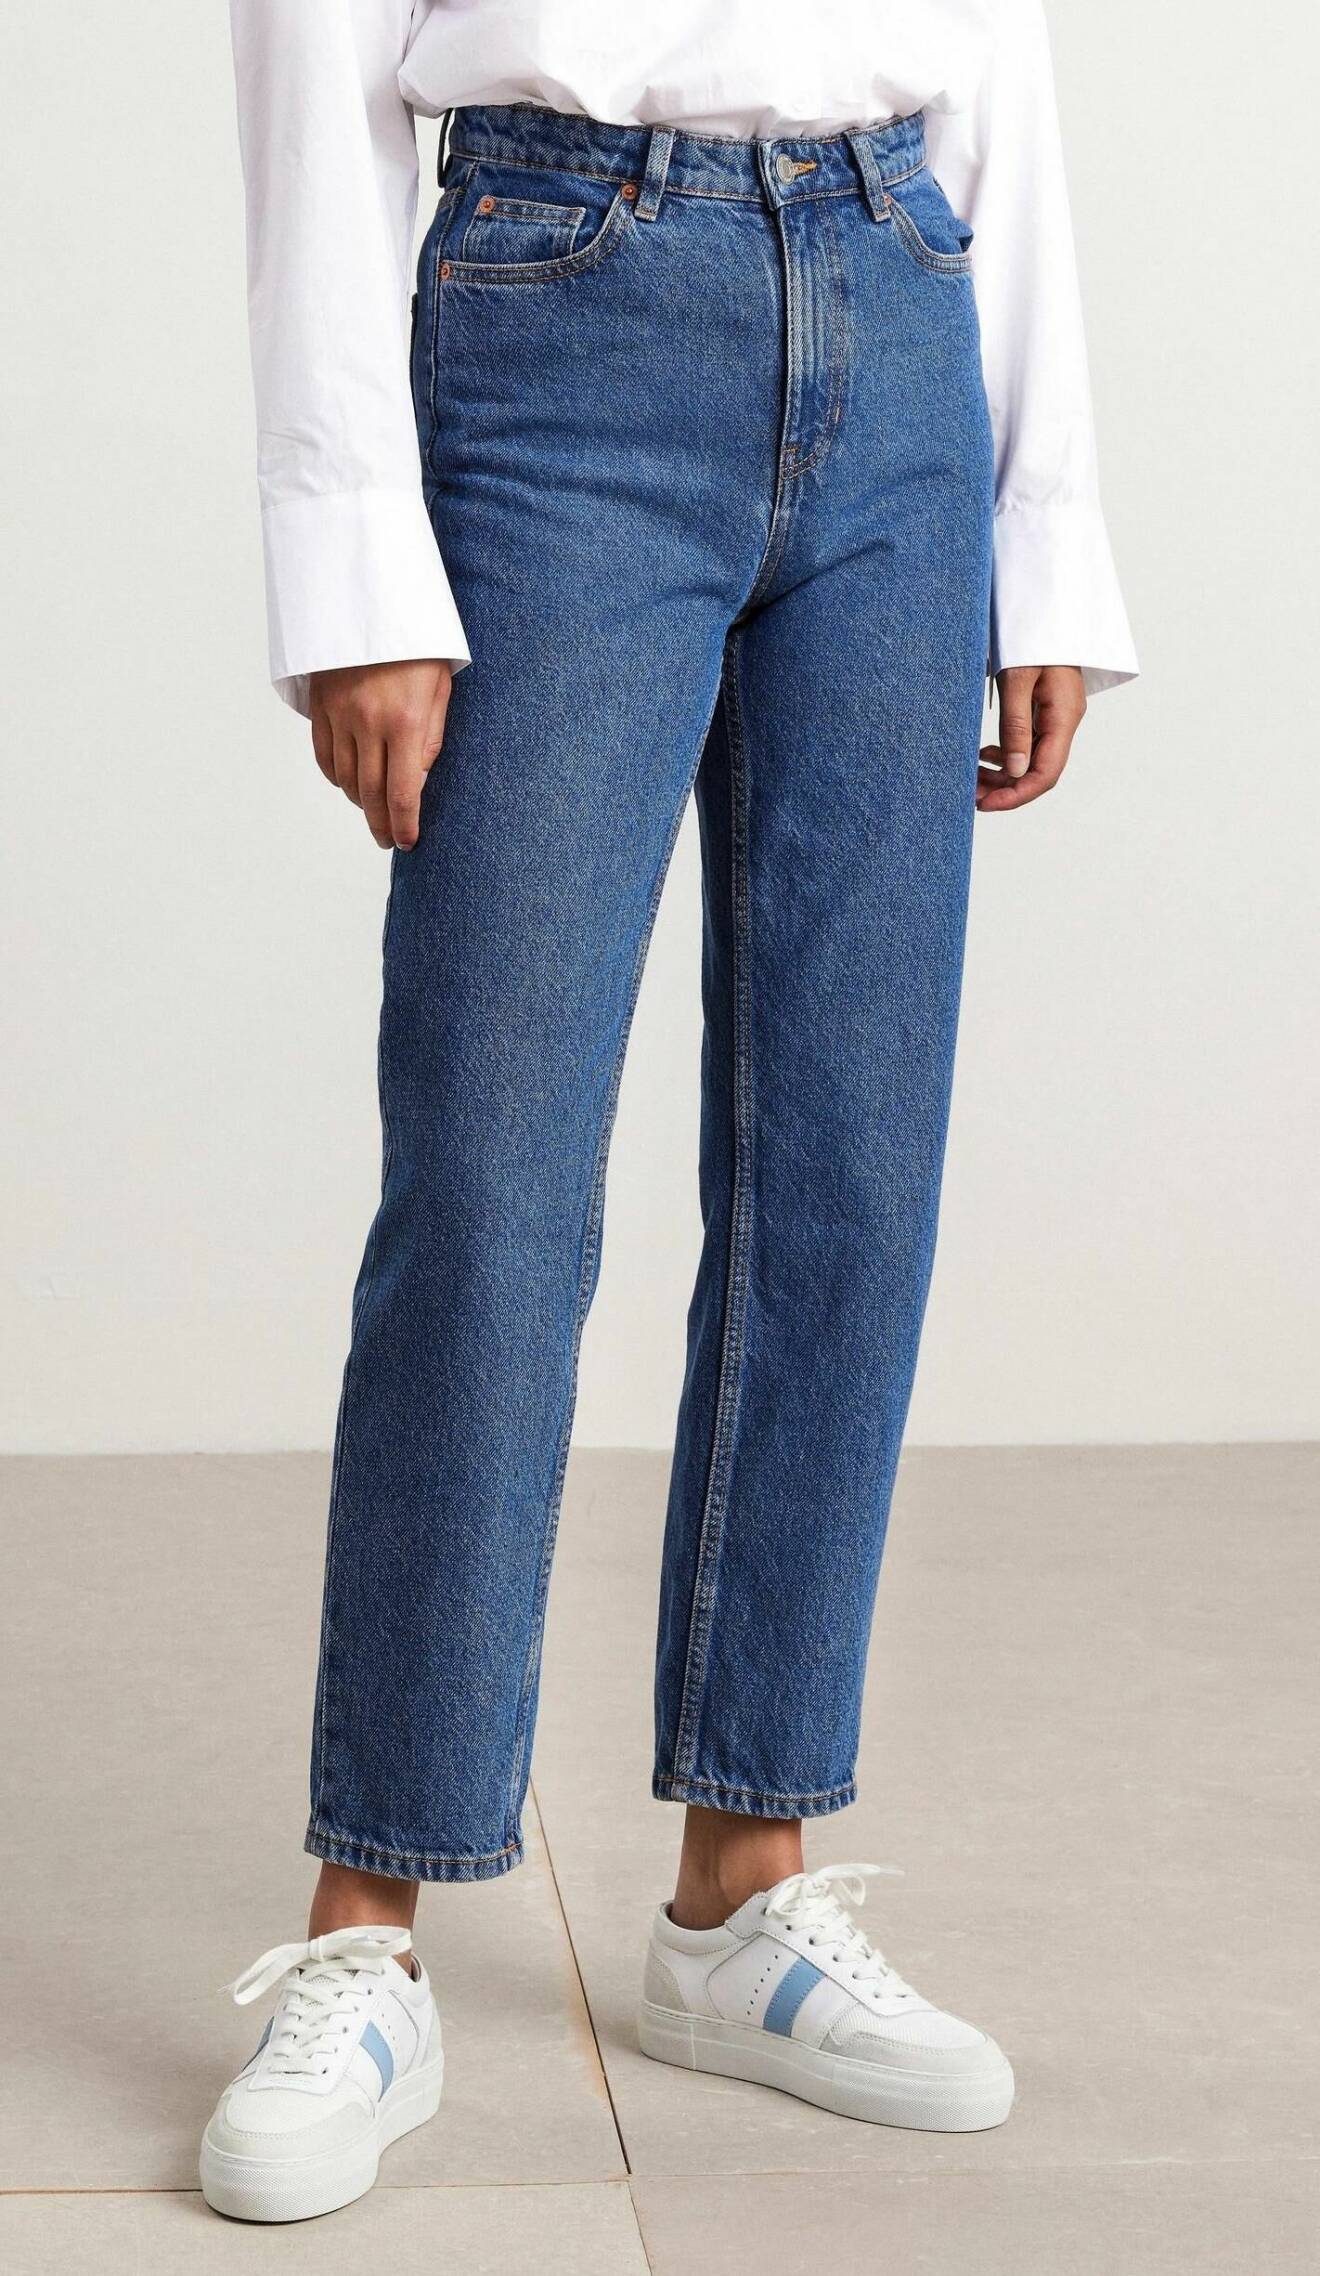 jeans i rak modell från Lindex.